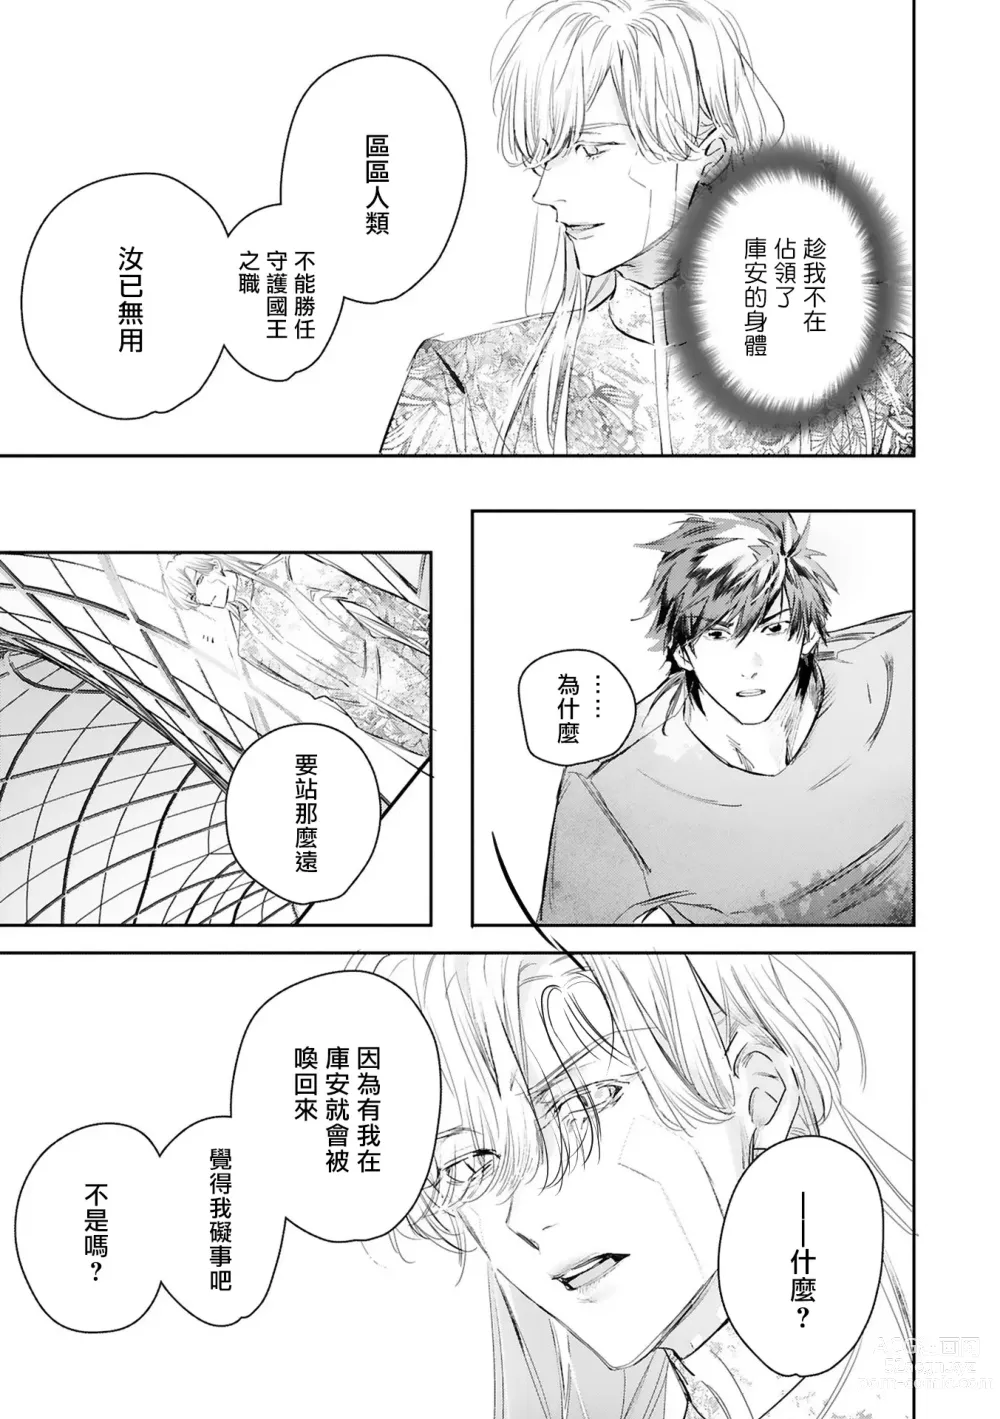 Page 428 of manga 末世青鸟 Ch. 4-10 + 特典 + 11-14